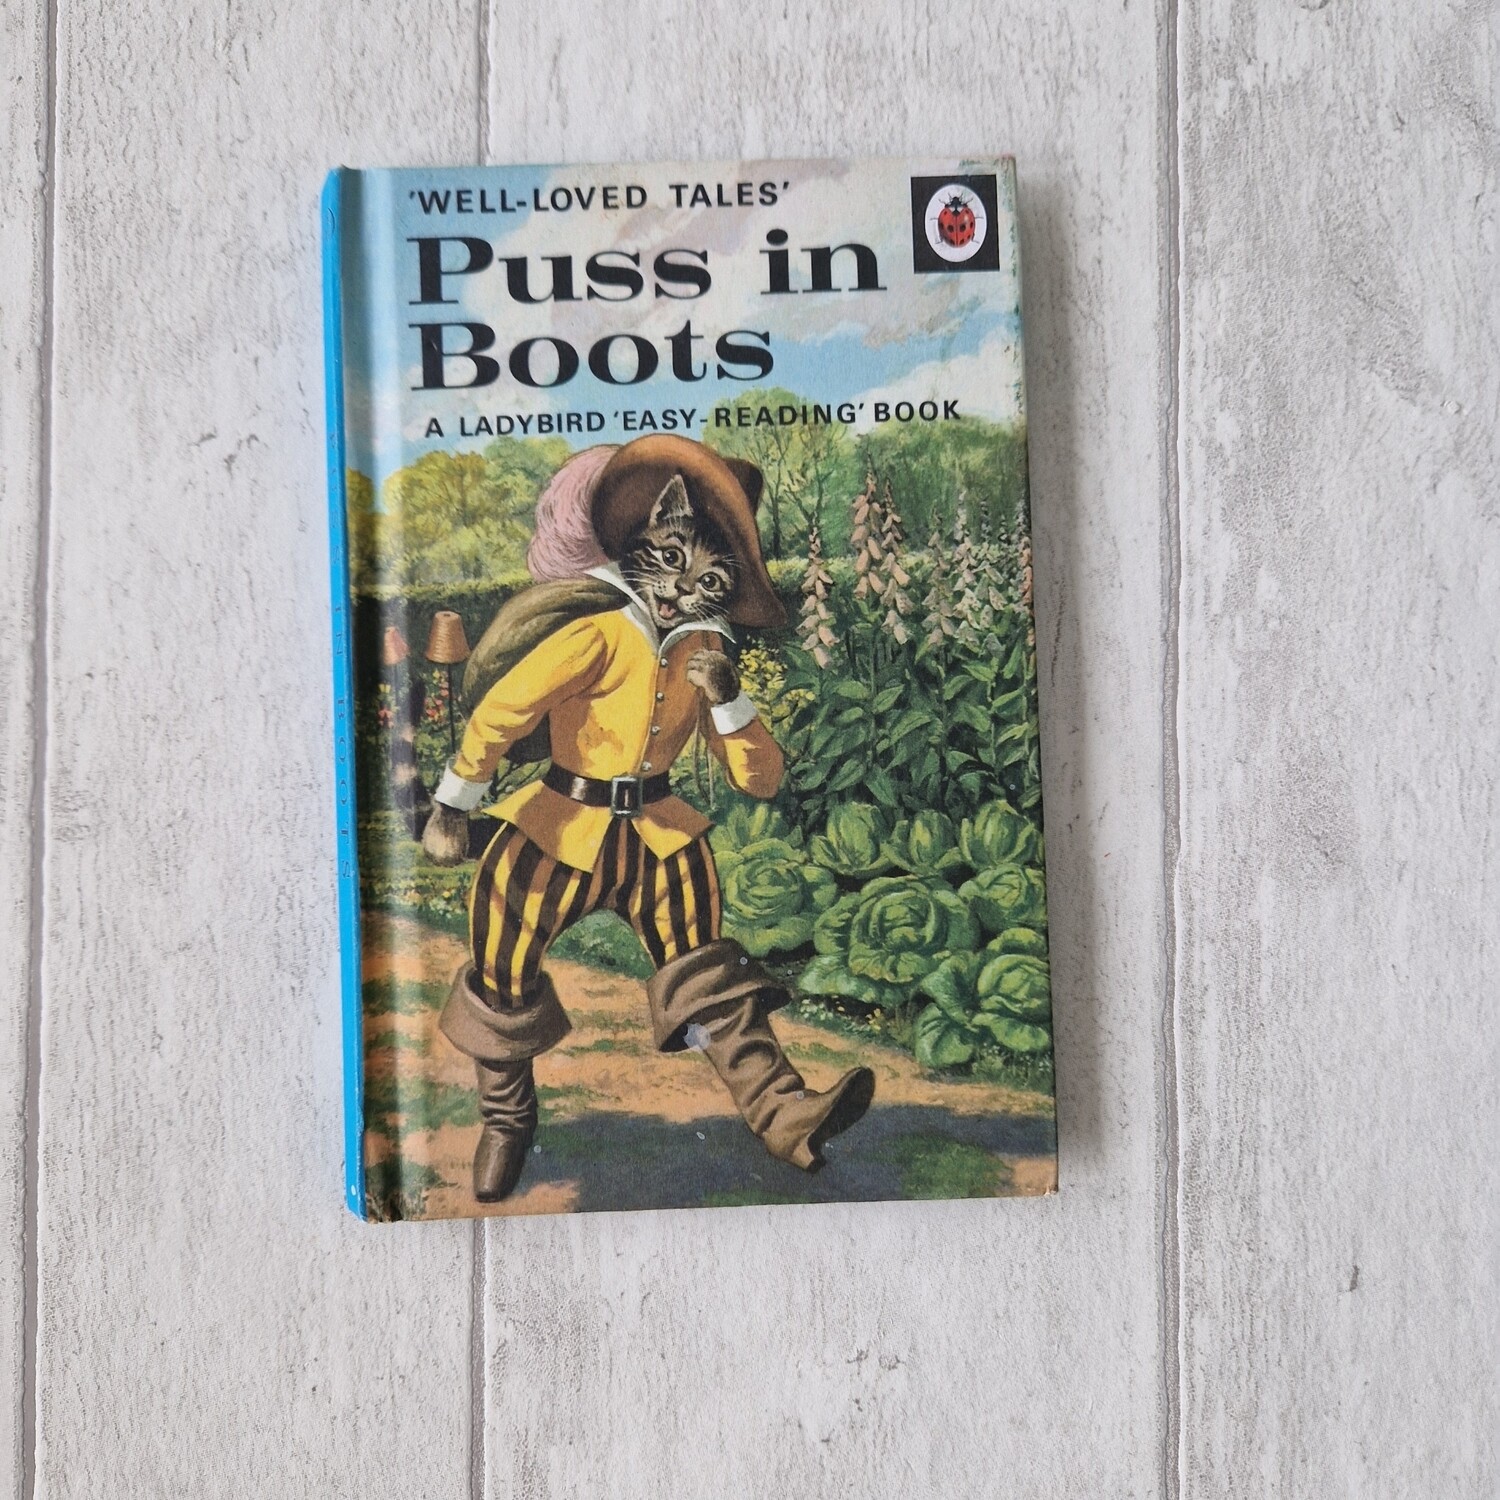 Puss in Boots Notebook - Ladybird Book